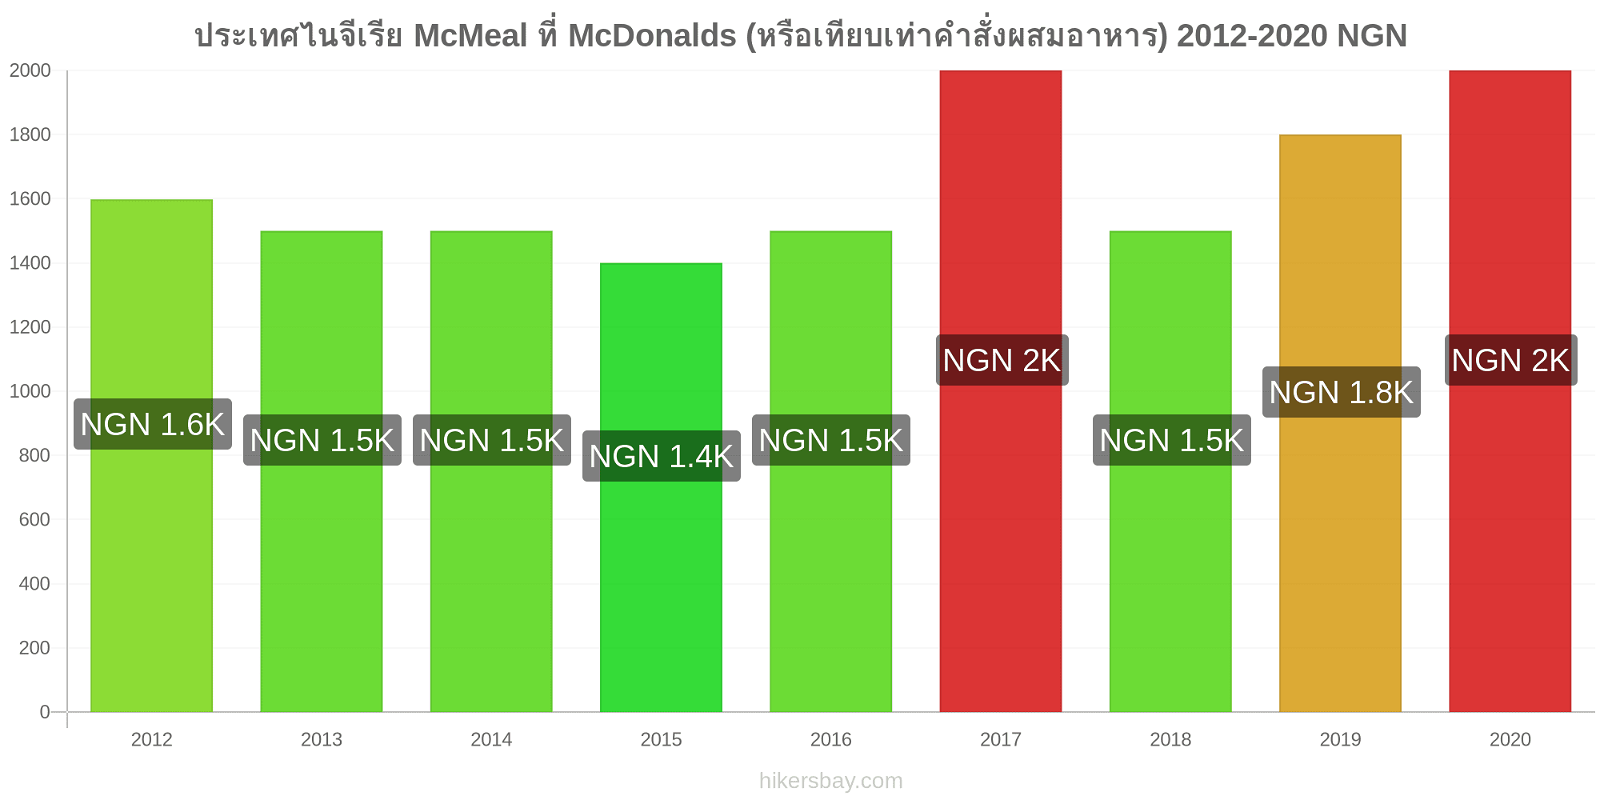 ประเทศไนจีเรีย การเปลี่ยนแปลงราคา McMeal ที่ McDonalds (หรือเทียบเท่าคำสั่งผสมอาหาร) hikersbay.com